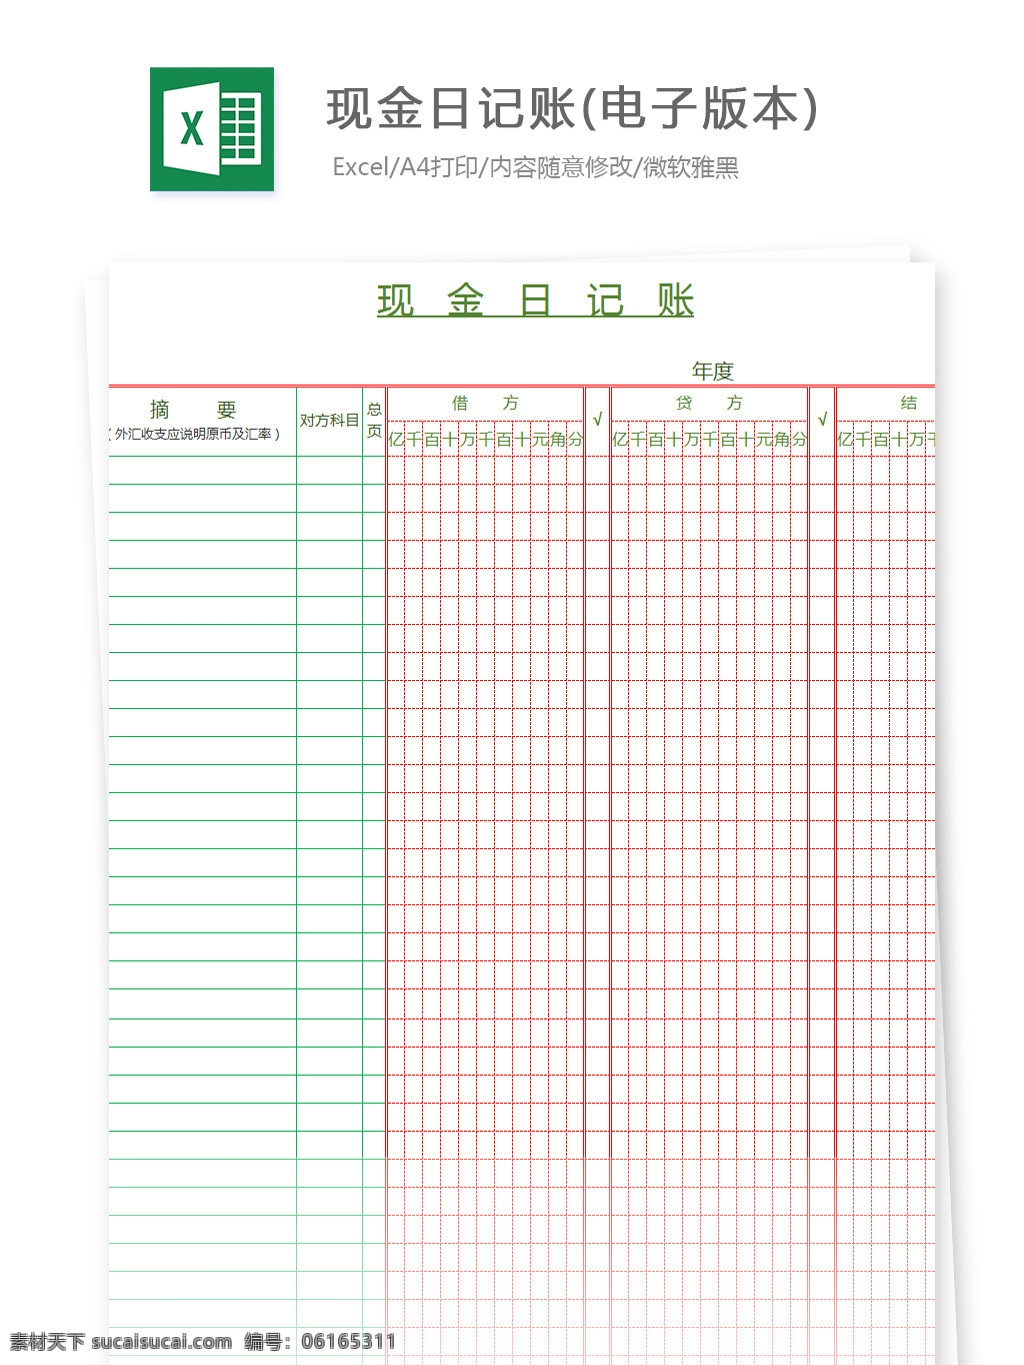 现金 日记账 电子 版本 excel 图表 图表模板 模板 文档 表格 表格模板 自动变换 表格设计